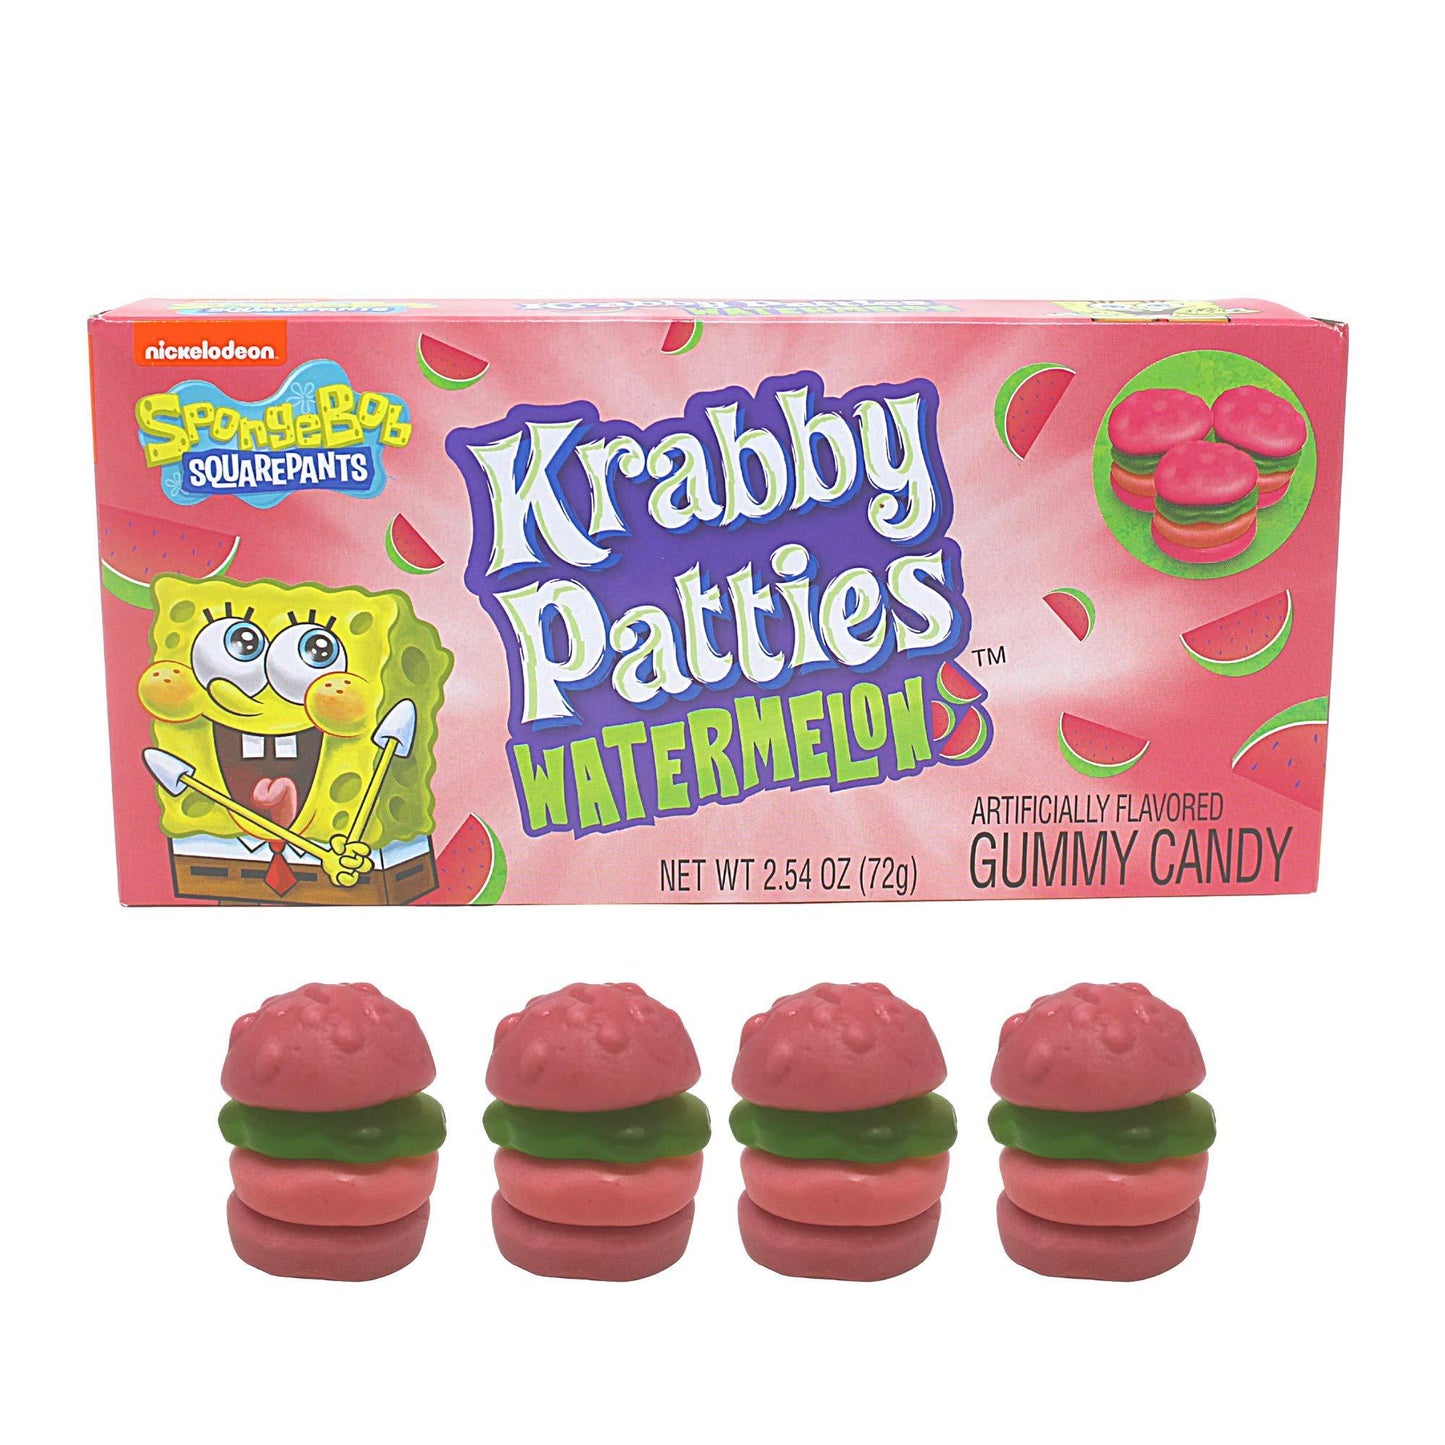 SpongeBob Krabby Patties Watermelon Gummy Candy Theatre Box - Extreme Snacks